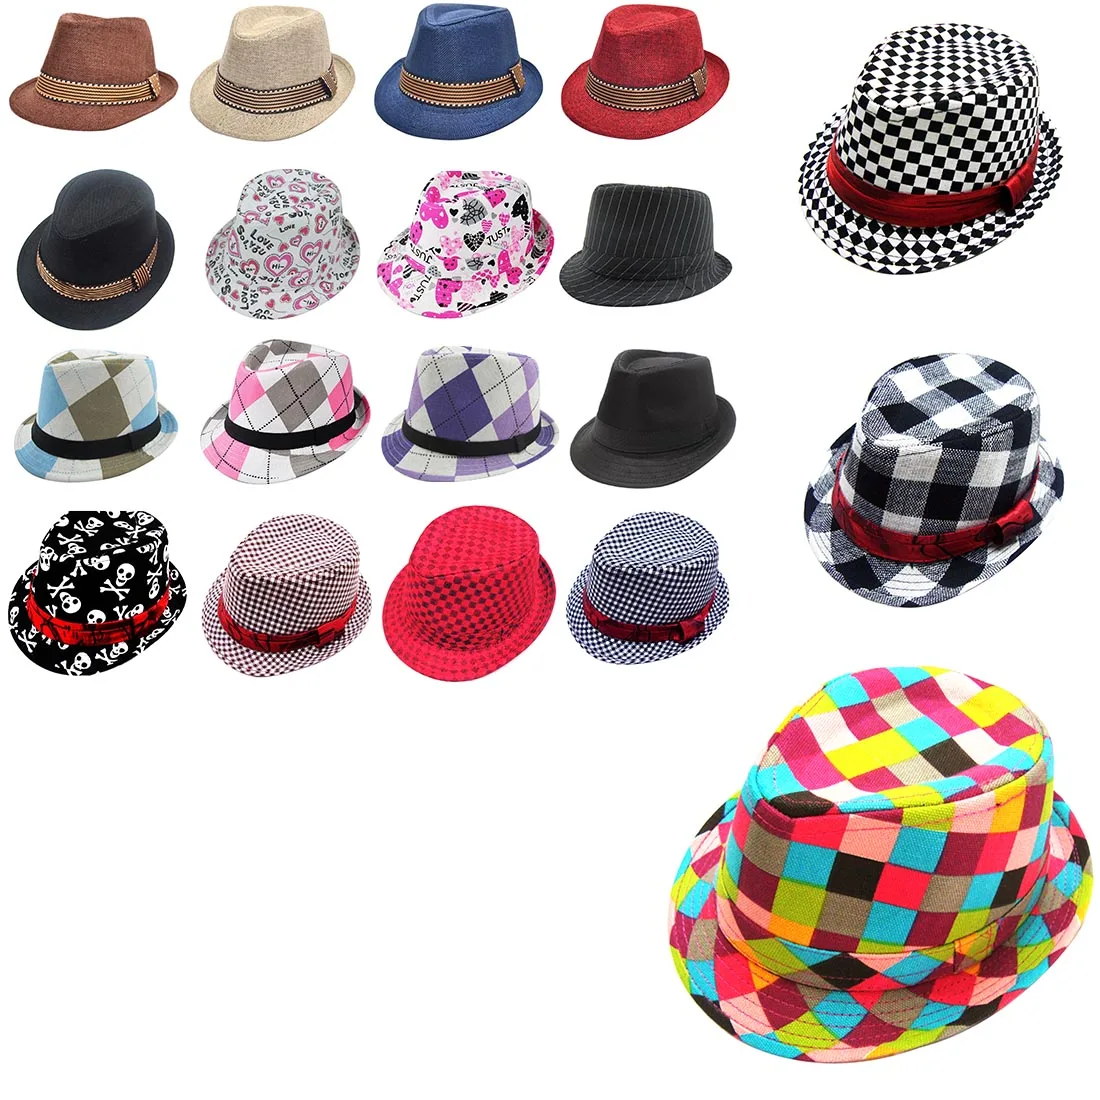 Новинка 2018 года, красивые хлопковые шляпы для фотосъемки от 2 до 6 лет, лучший подарок для детей, детская джазовая шляпа, детская шапка для